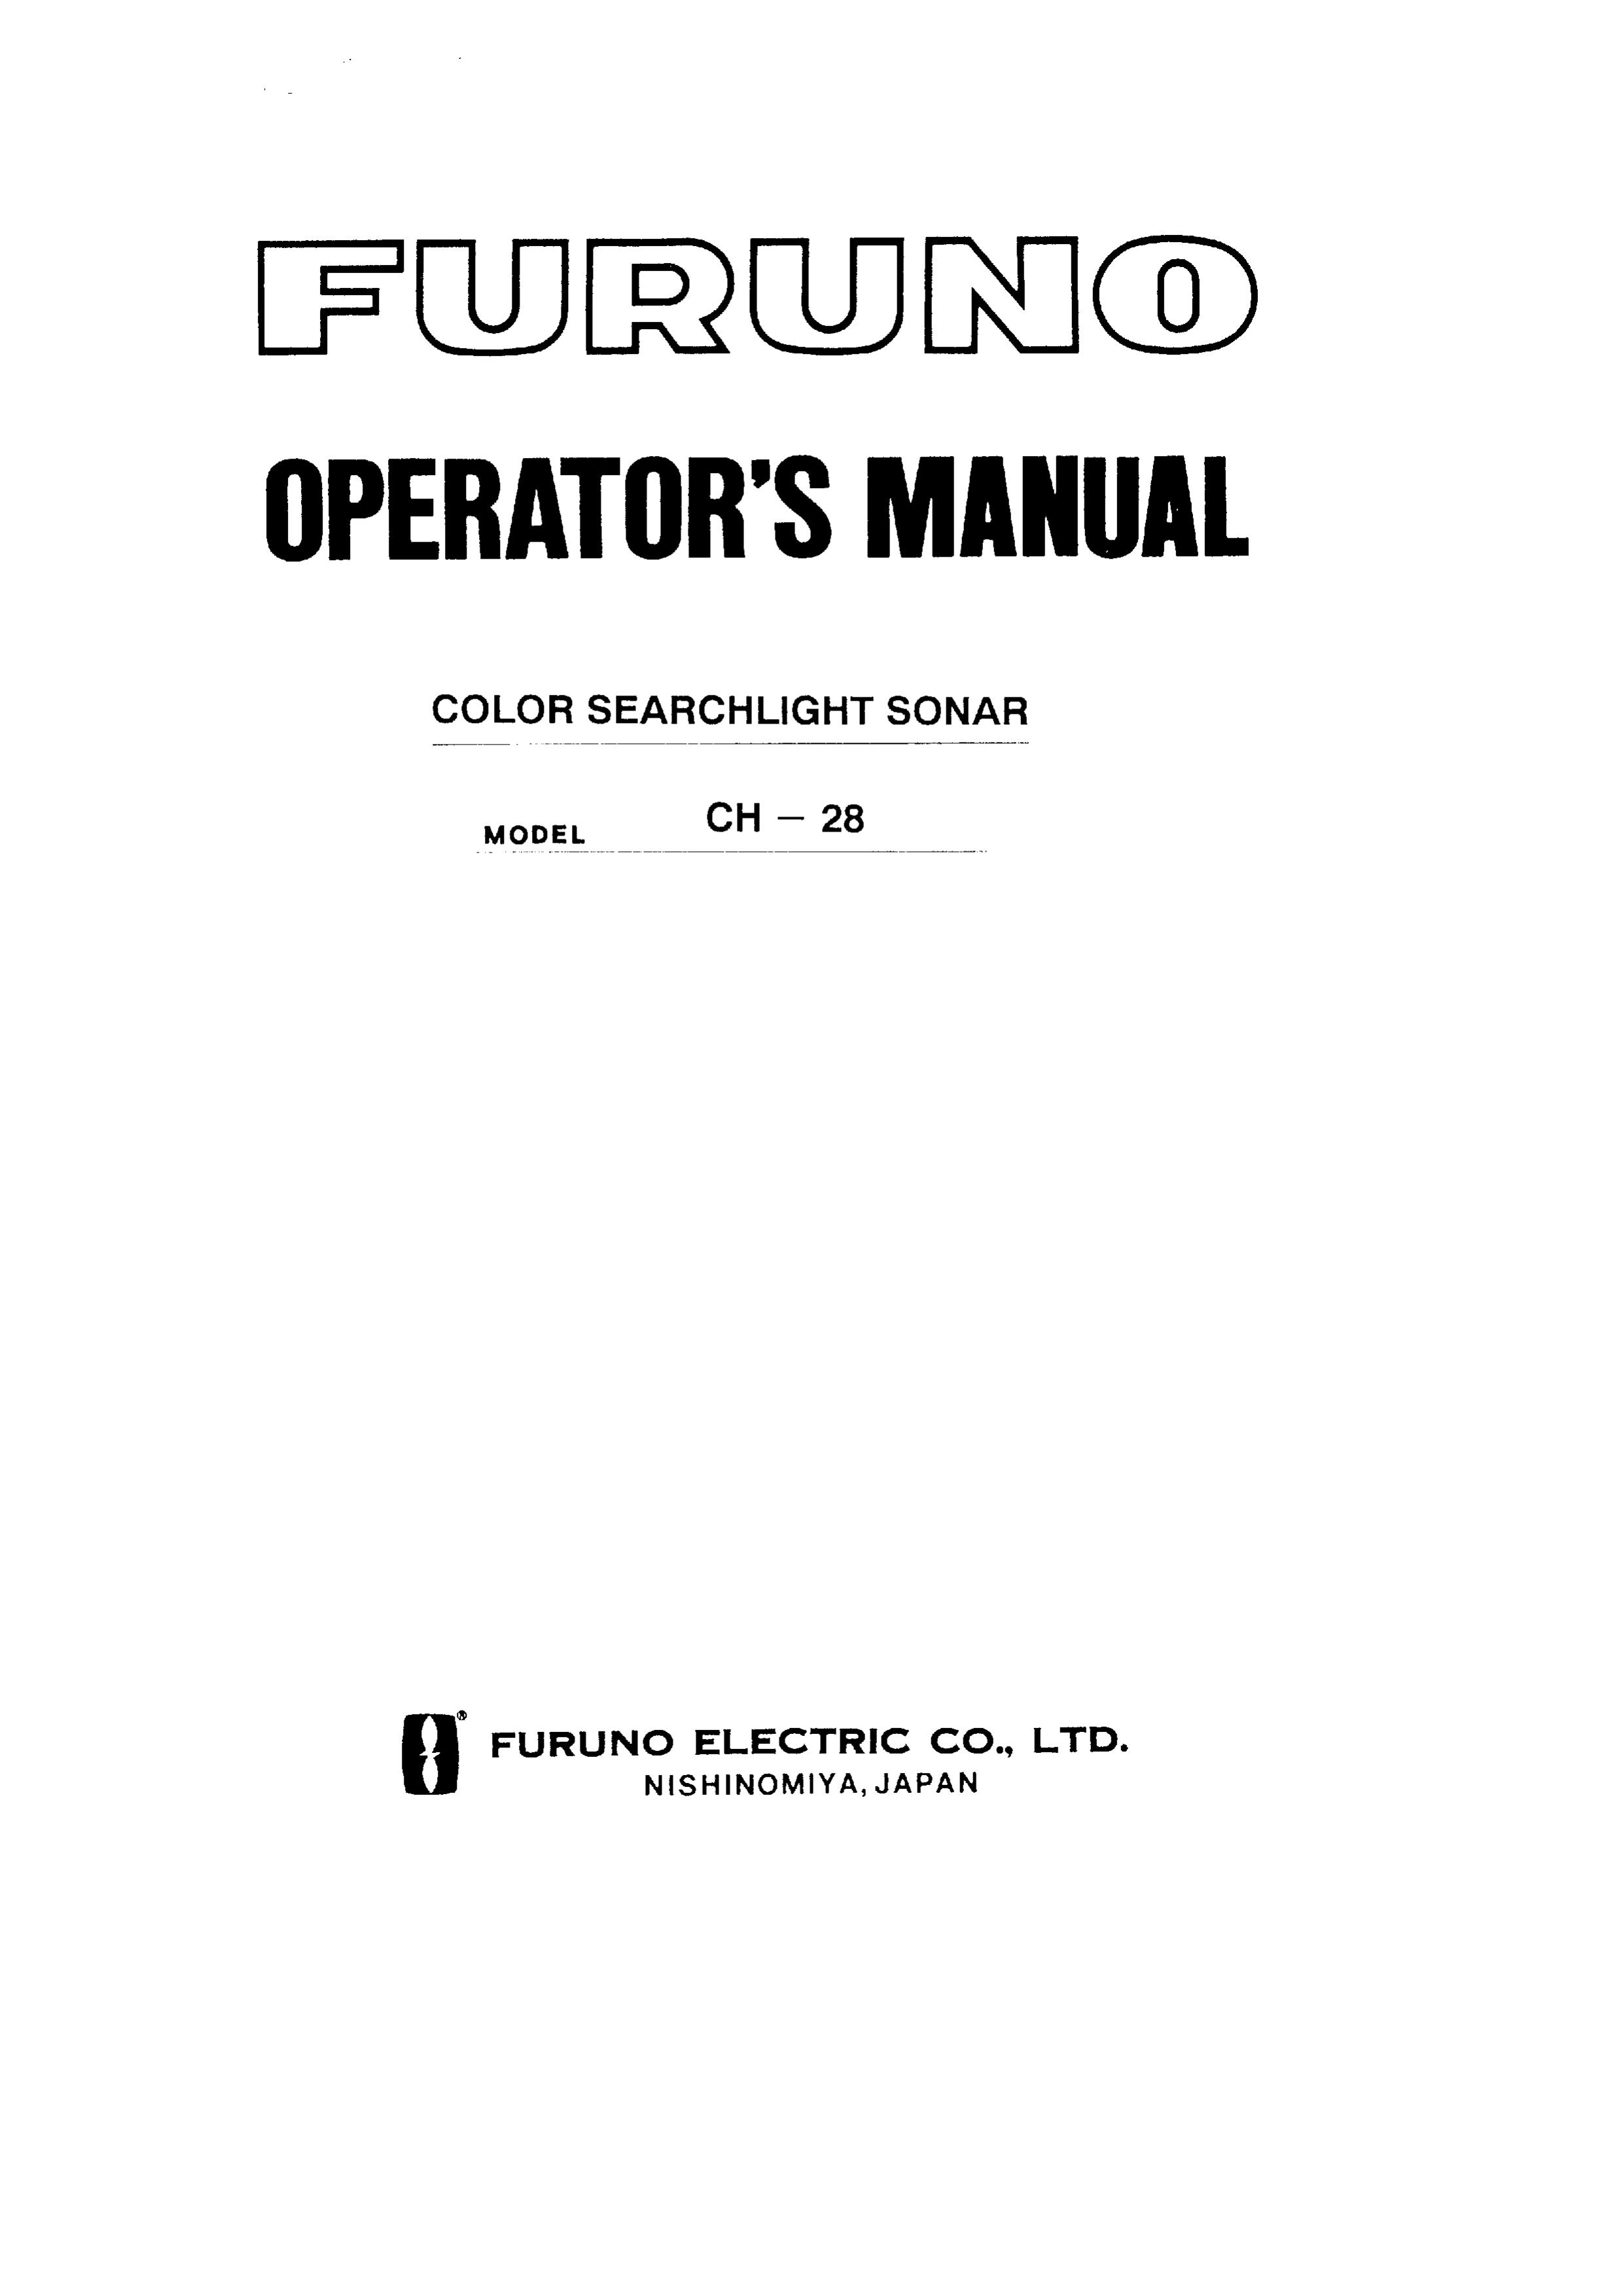 Furuno CH-28 SONAR User Manual